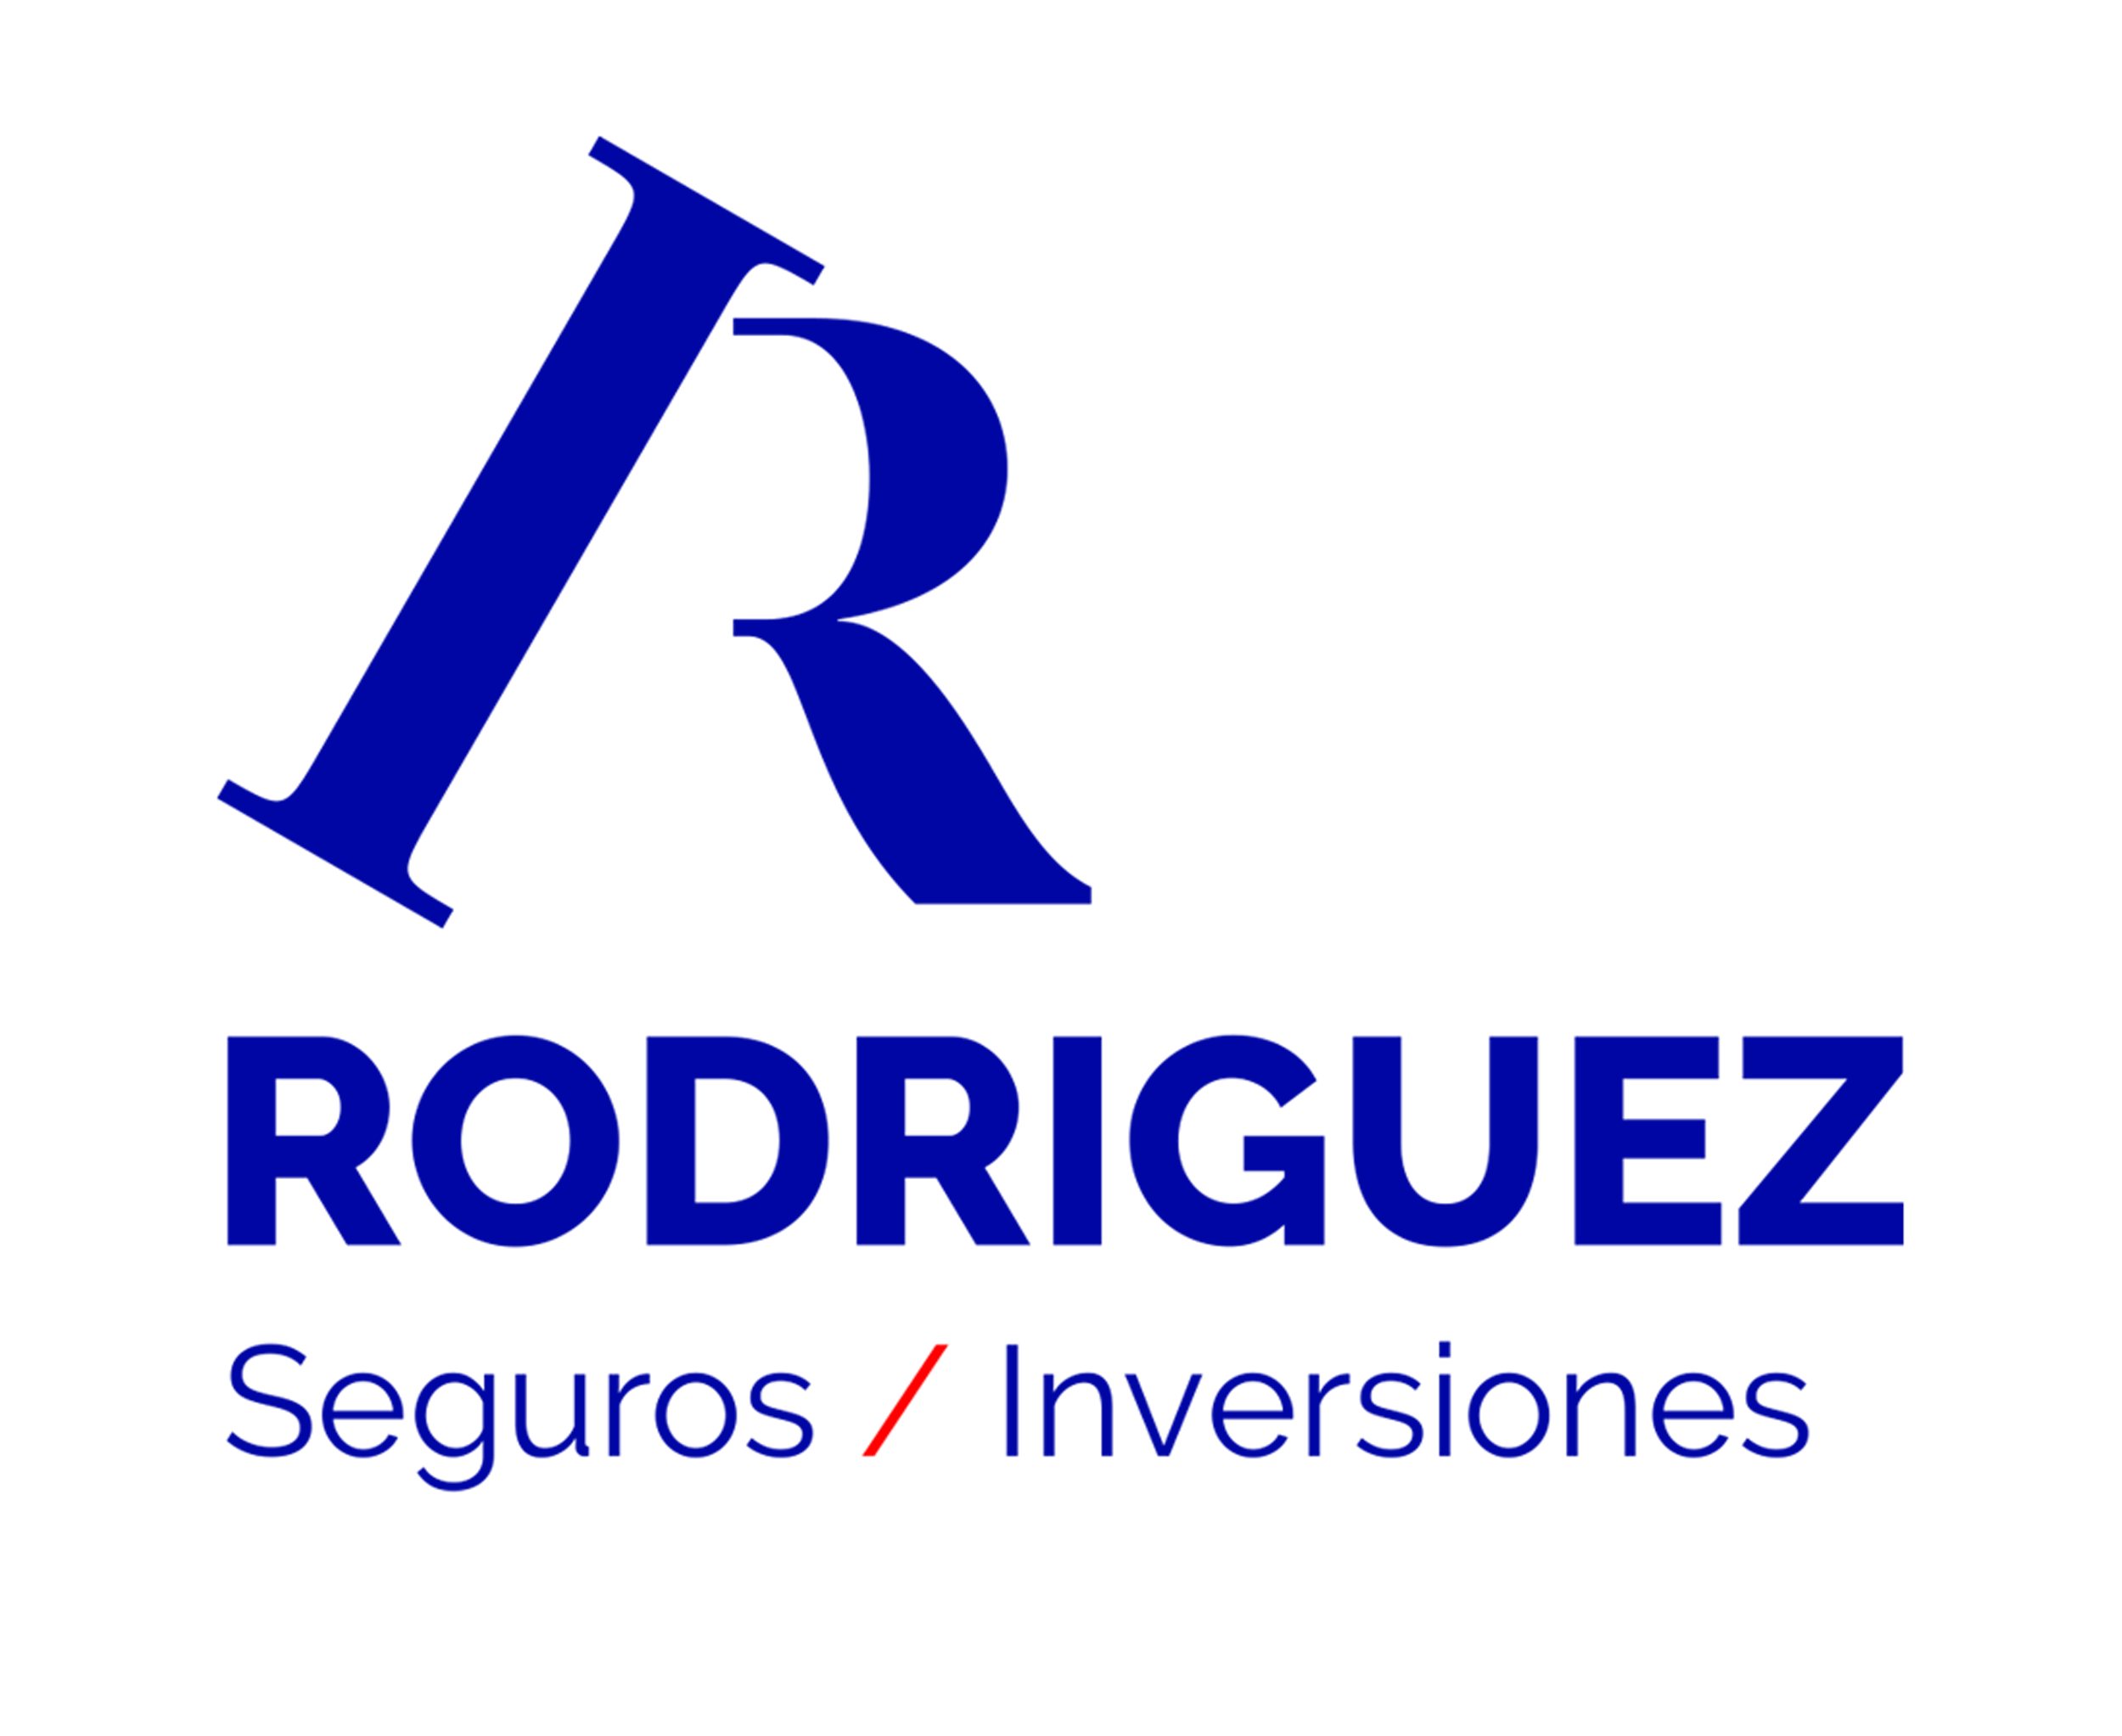 Rodriguez Seguros